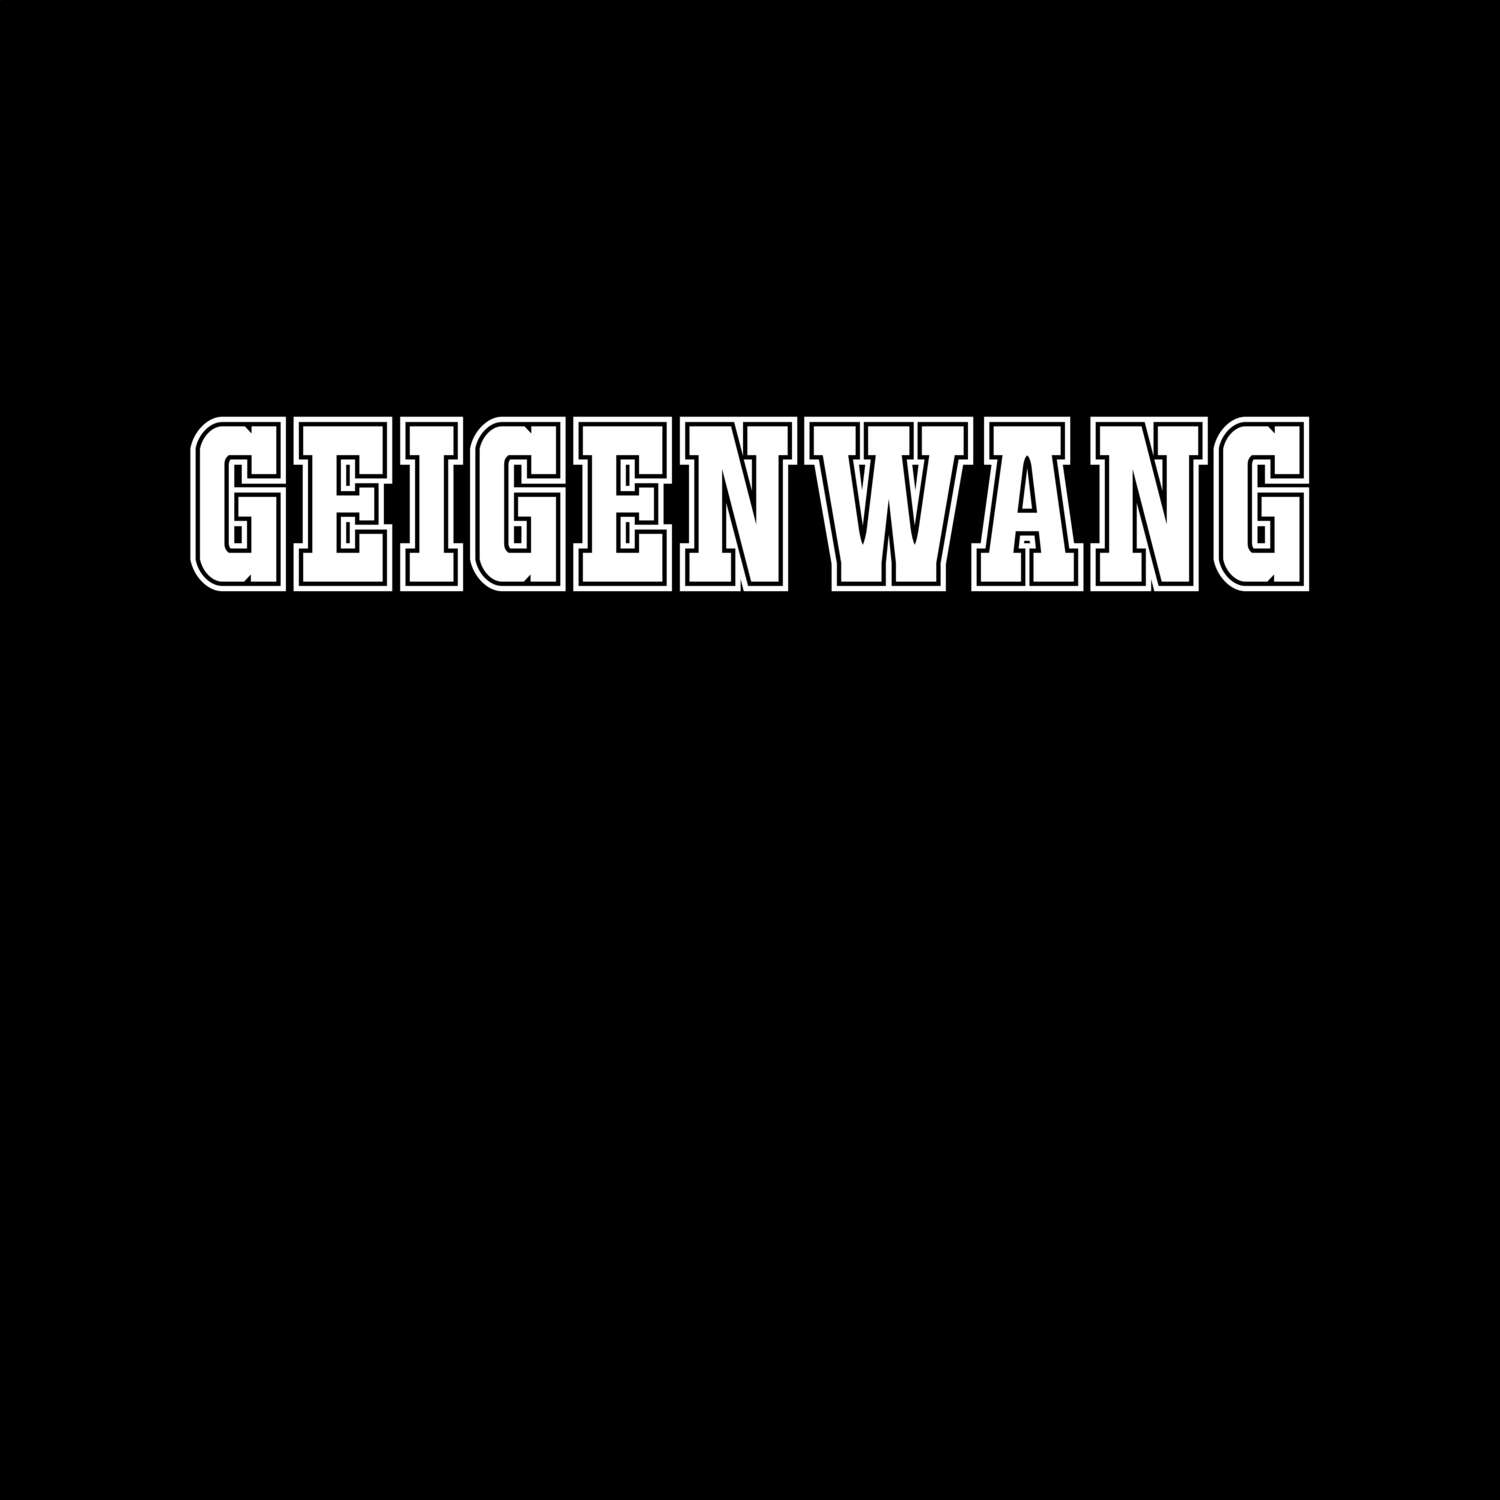 Geigenwang T-Shirt »Classic«